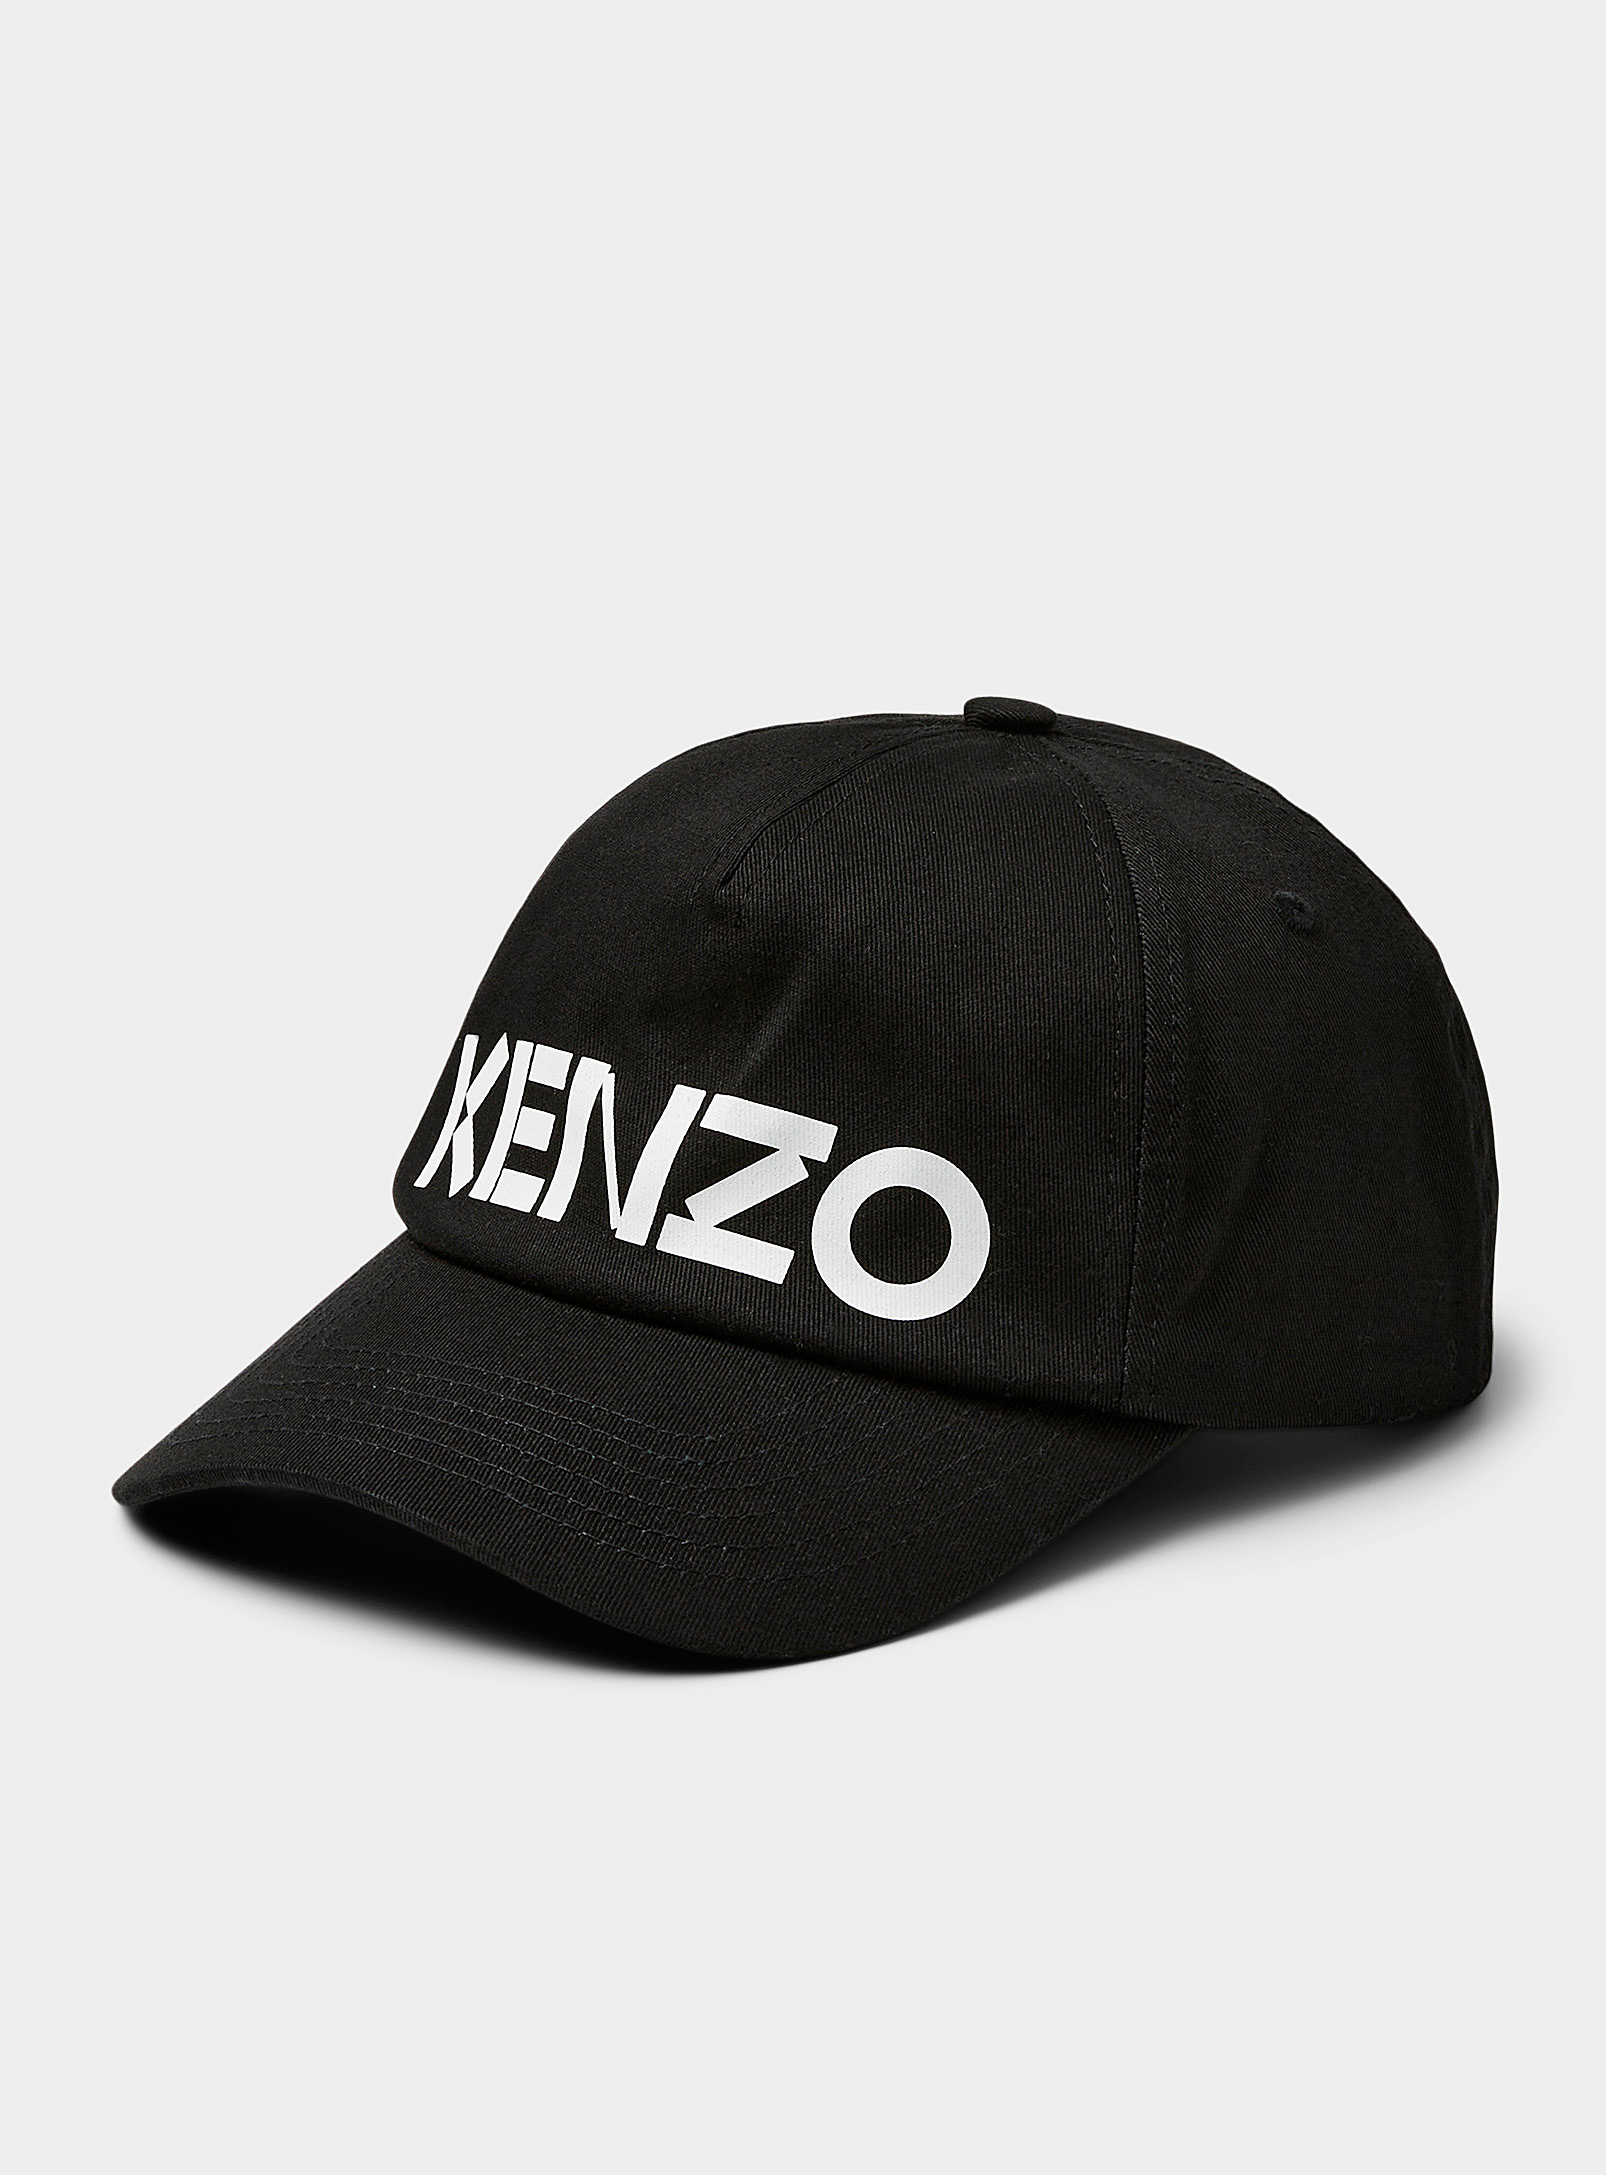 Kenzo Accent Signature Cap In Black